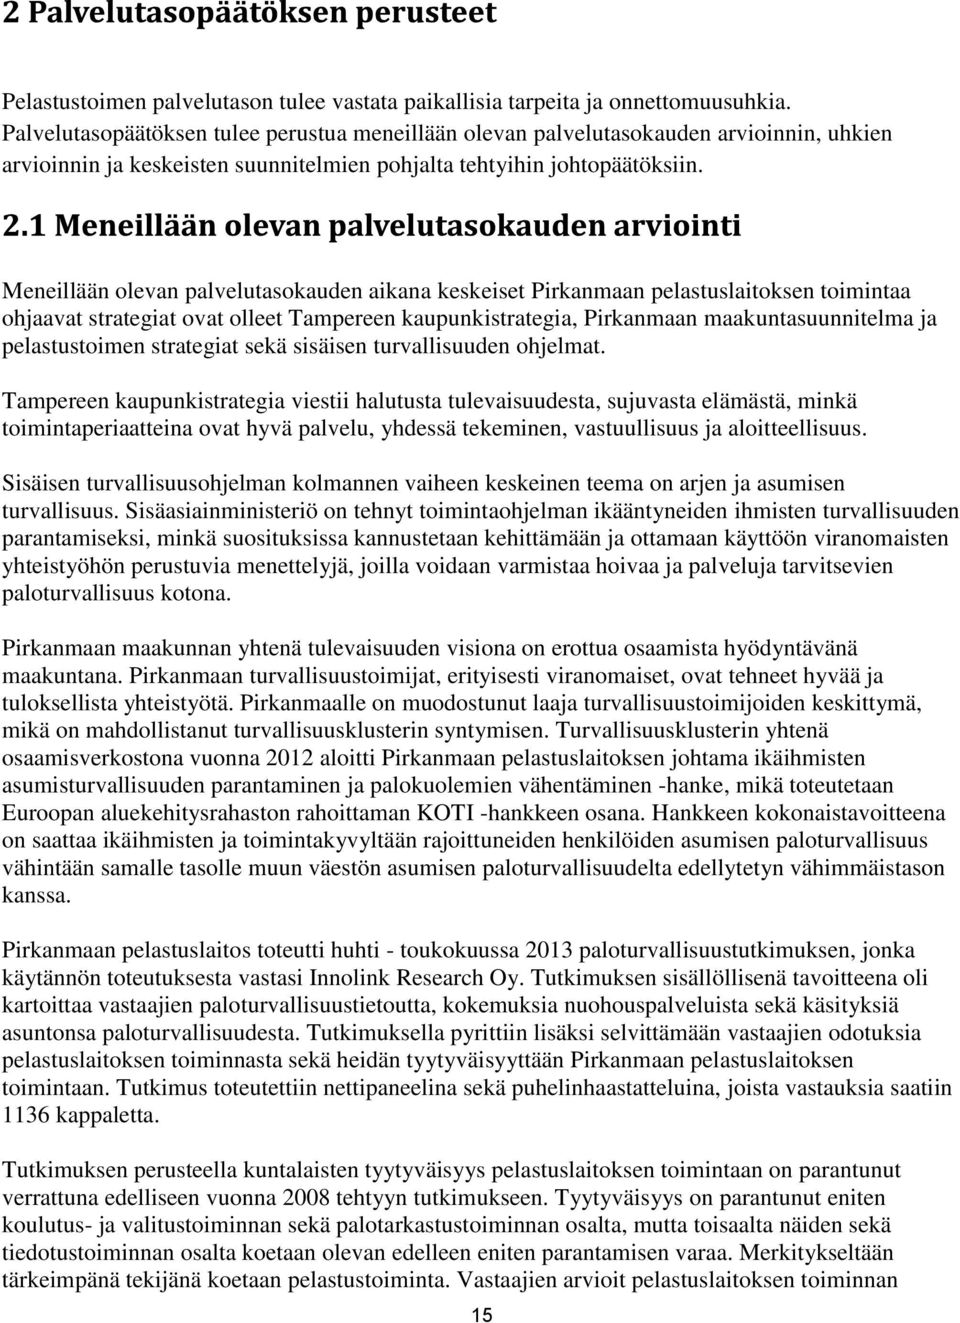 Meneillään olevan palvelutasokauden aikana keskeiset Pirkanmaan pelastuslaitoksen toimintaa ohjaavat strategiat ovat olleet Tampereen kaupunkistrategia, Pirkanmaan maakuntasuunnitelma ja